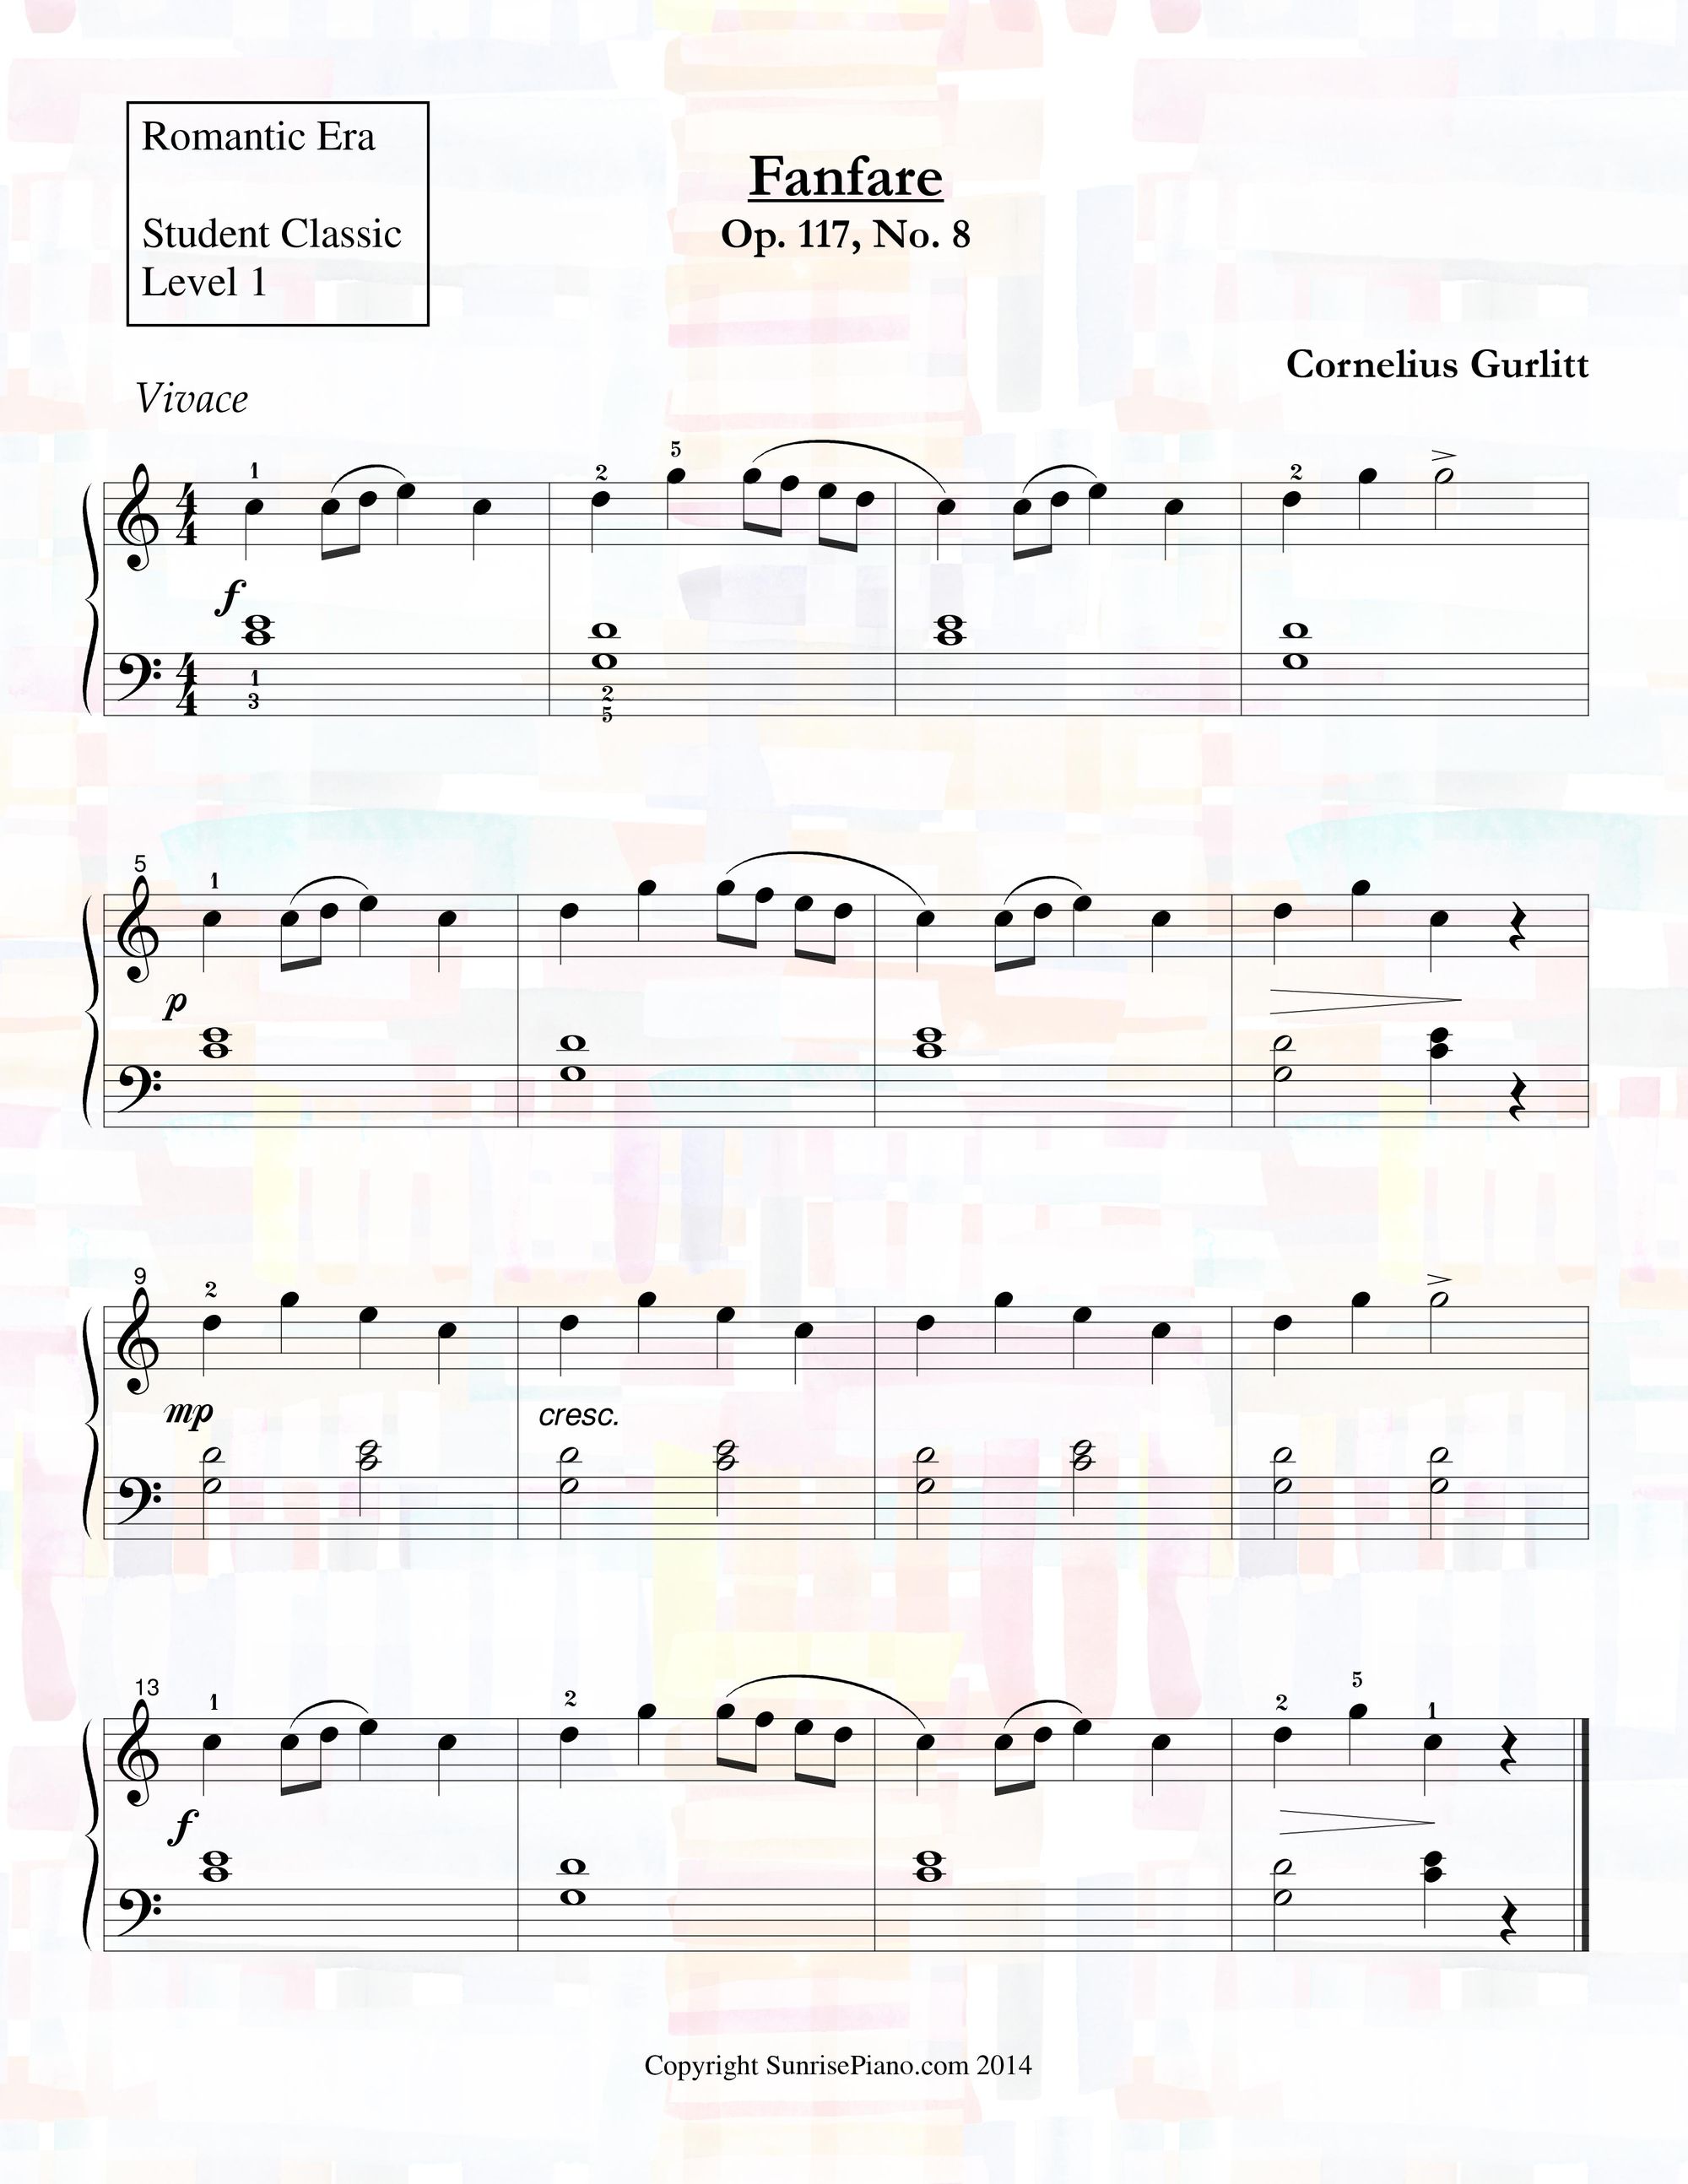 Cornelius Gurlitt - Fanfare Op. 117 No. 8 - Piano Sheet Music